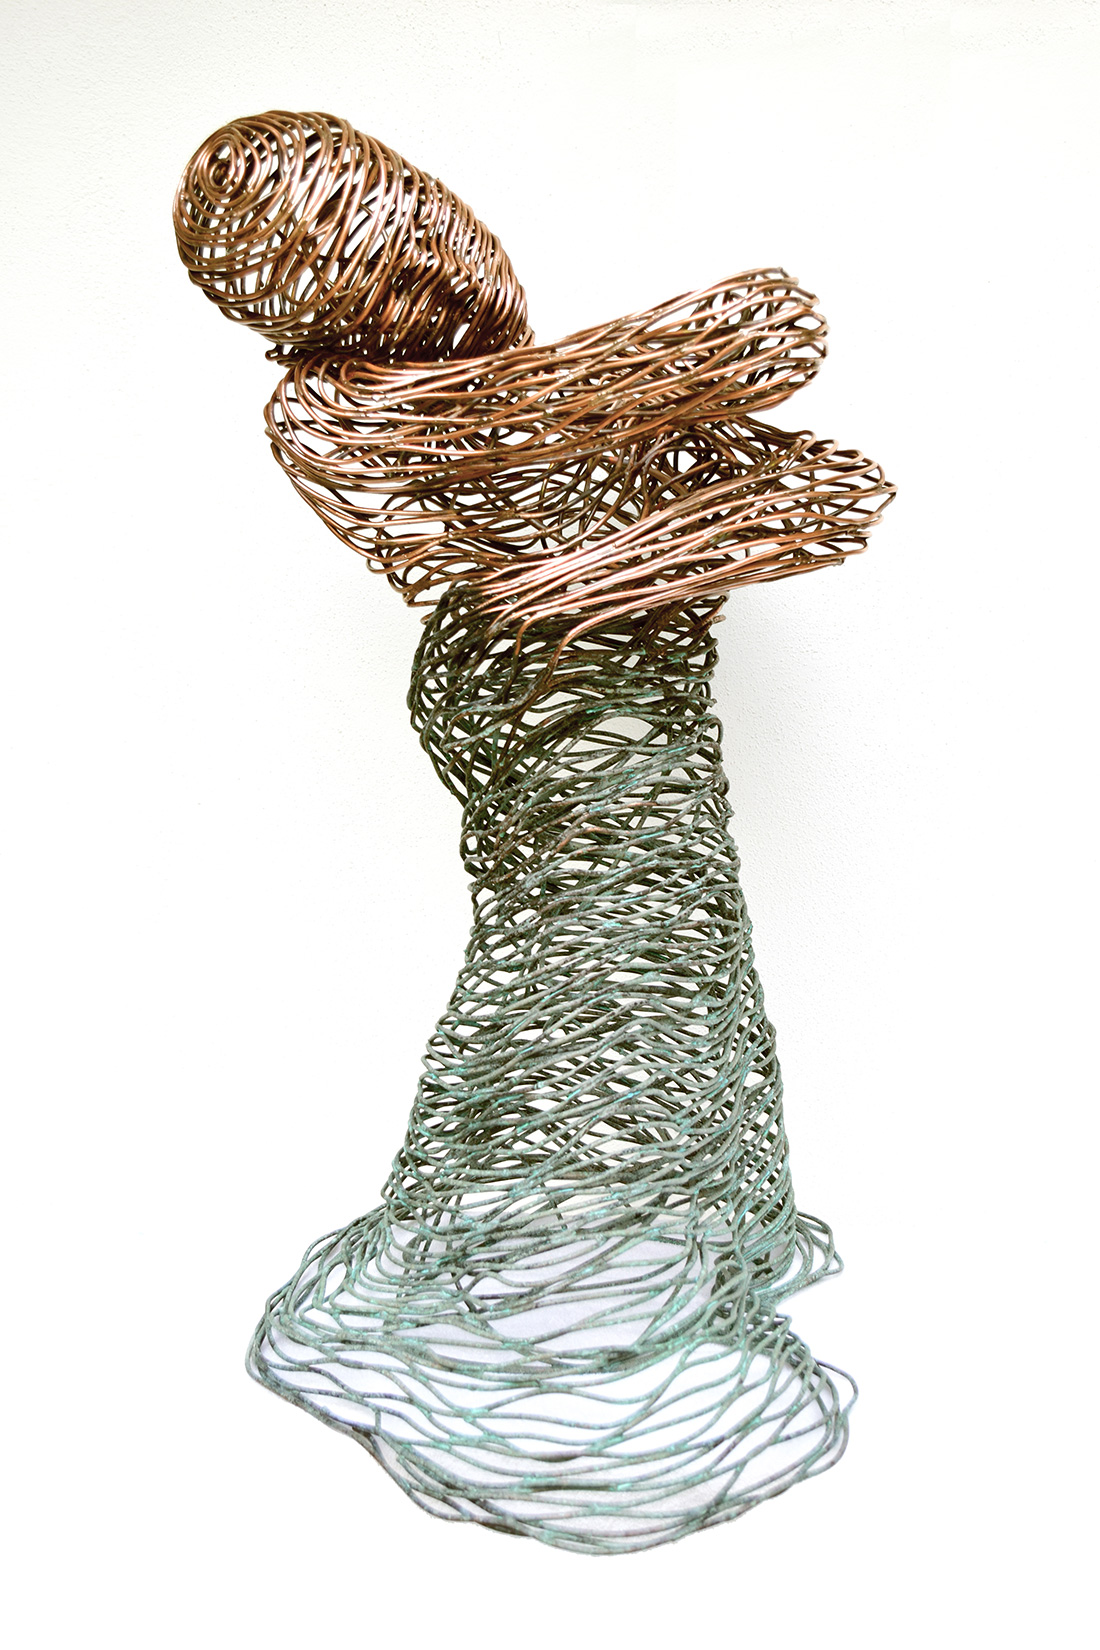 Bonzano Stefano, Acqua, Hand-welded copper tubular sculpture, 90x65x45 cm, 2015. Private collection.